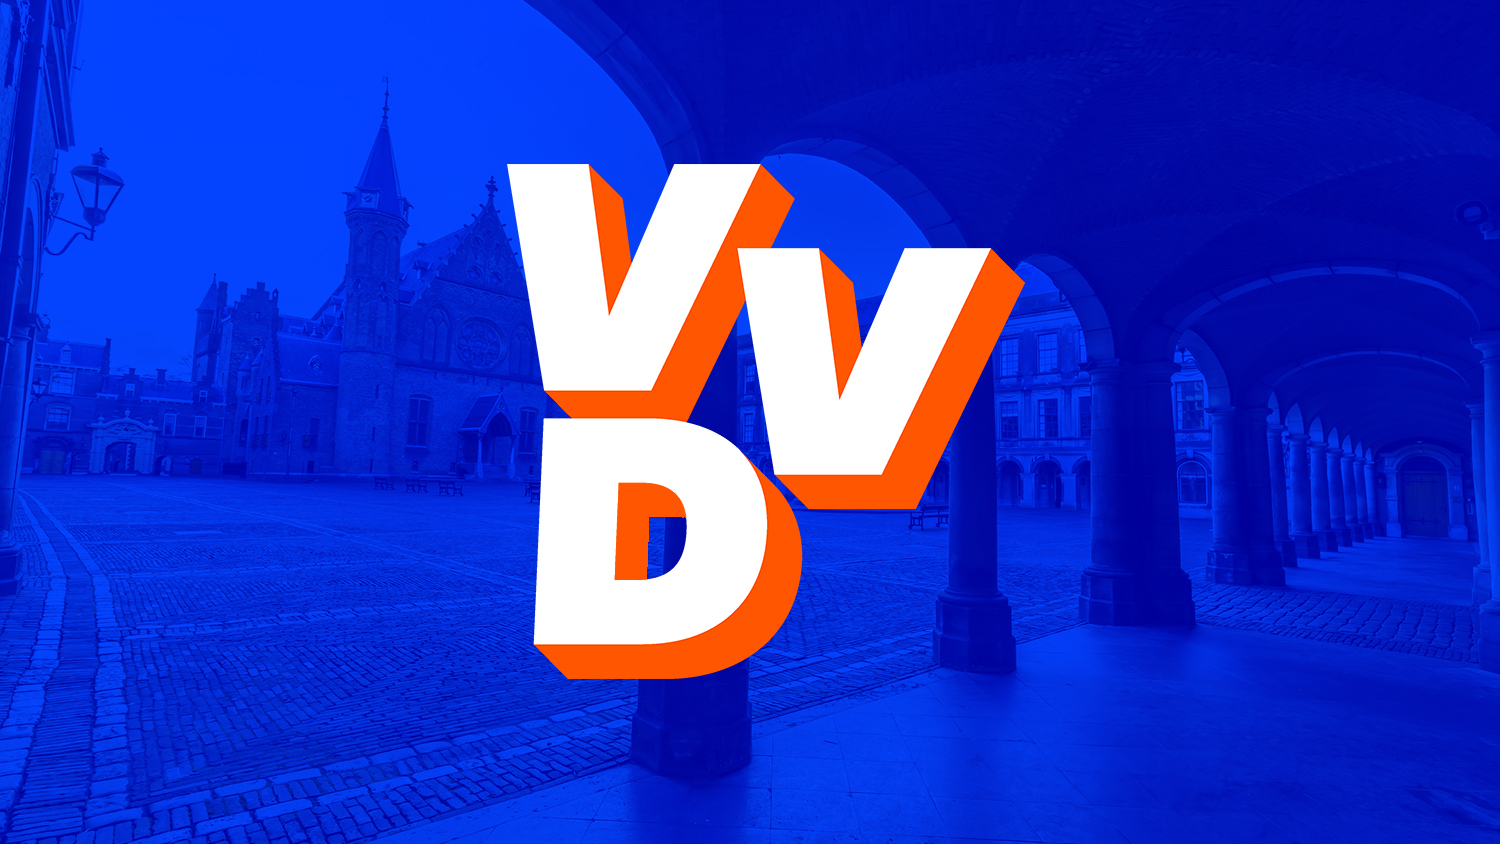 VVD logo Binnenhof